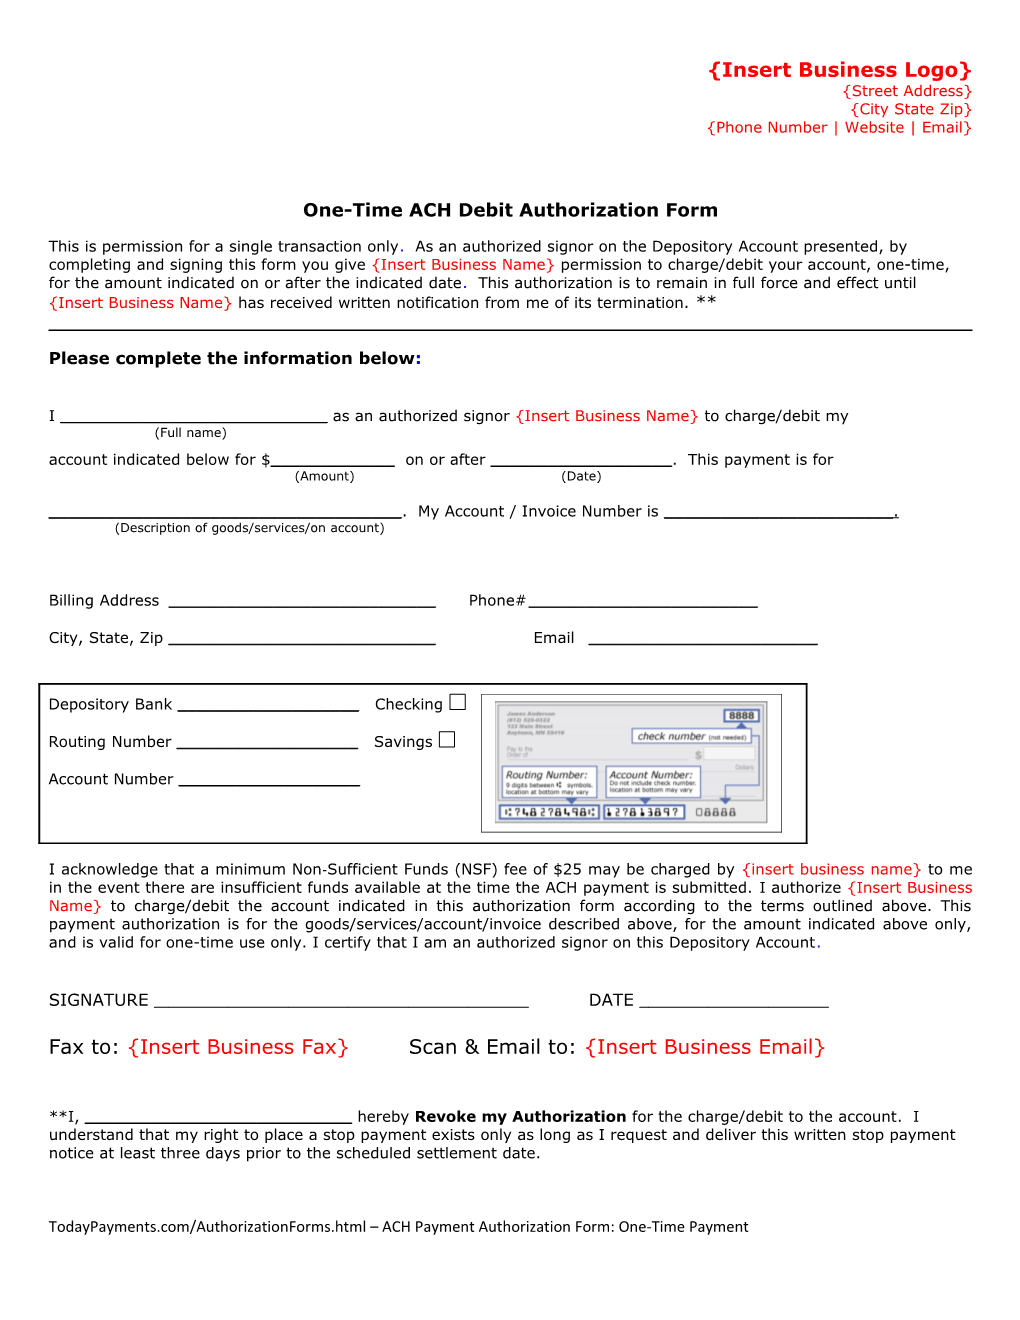 ACH Debit Authorization Form